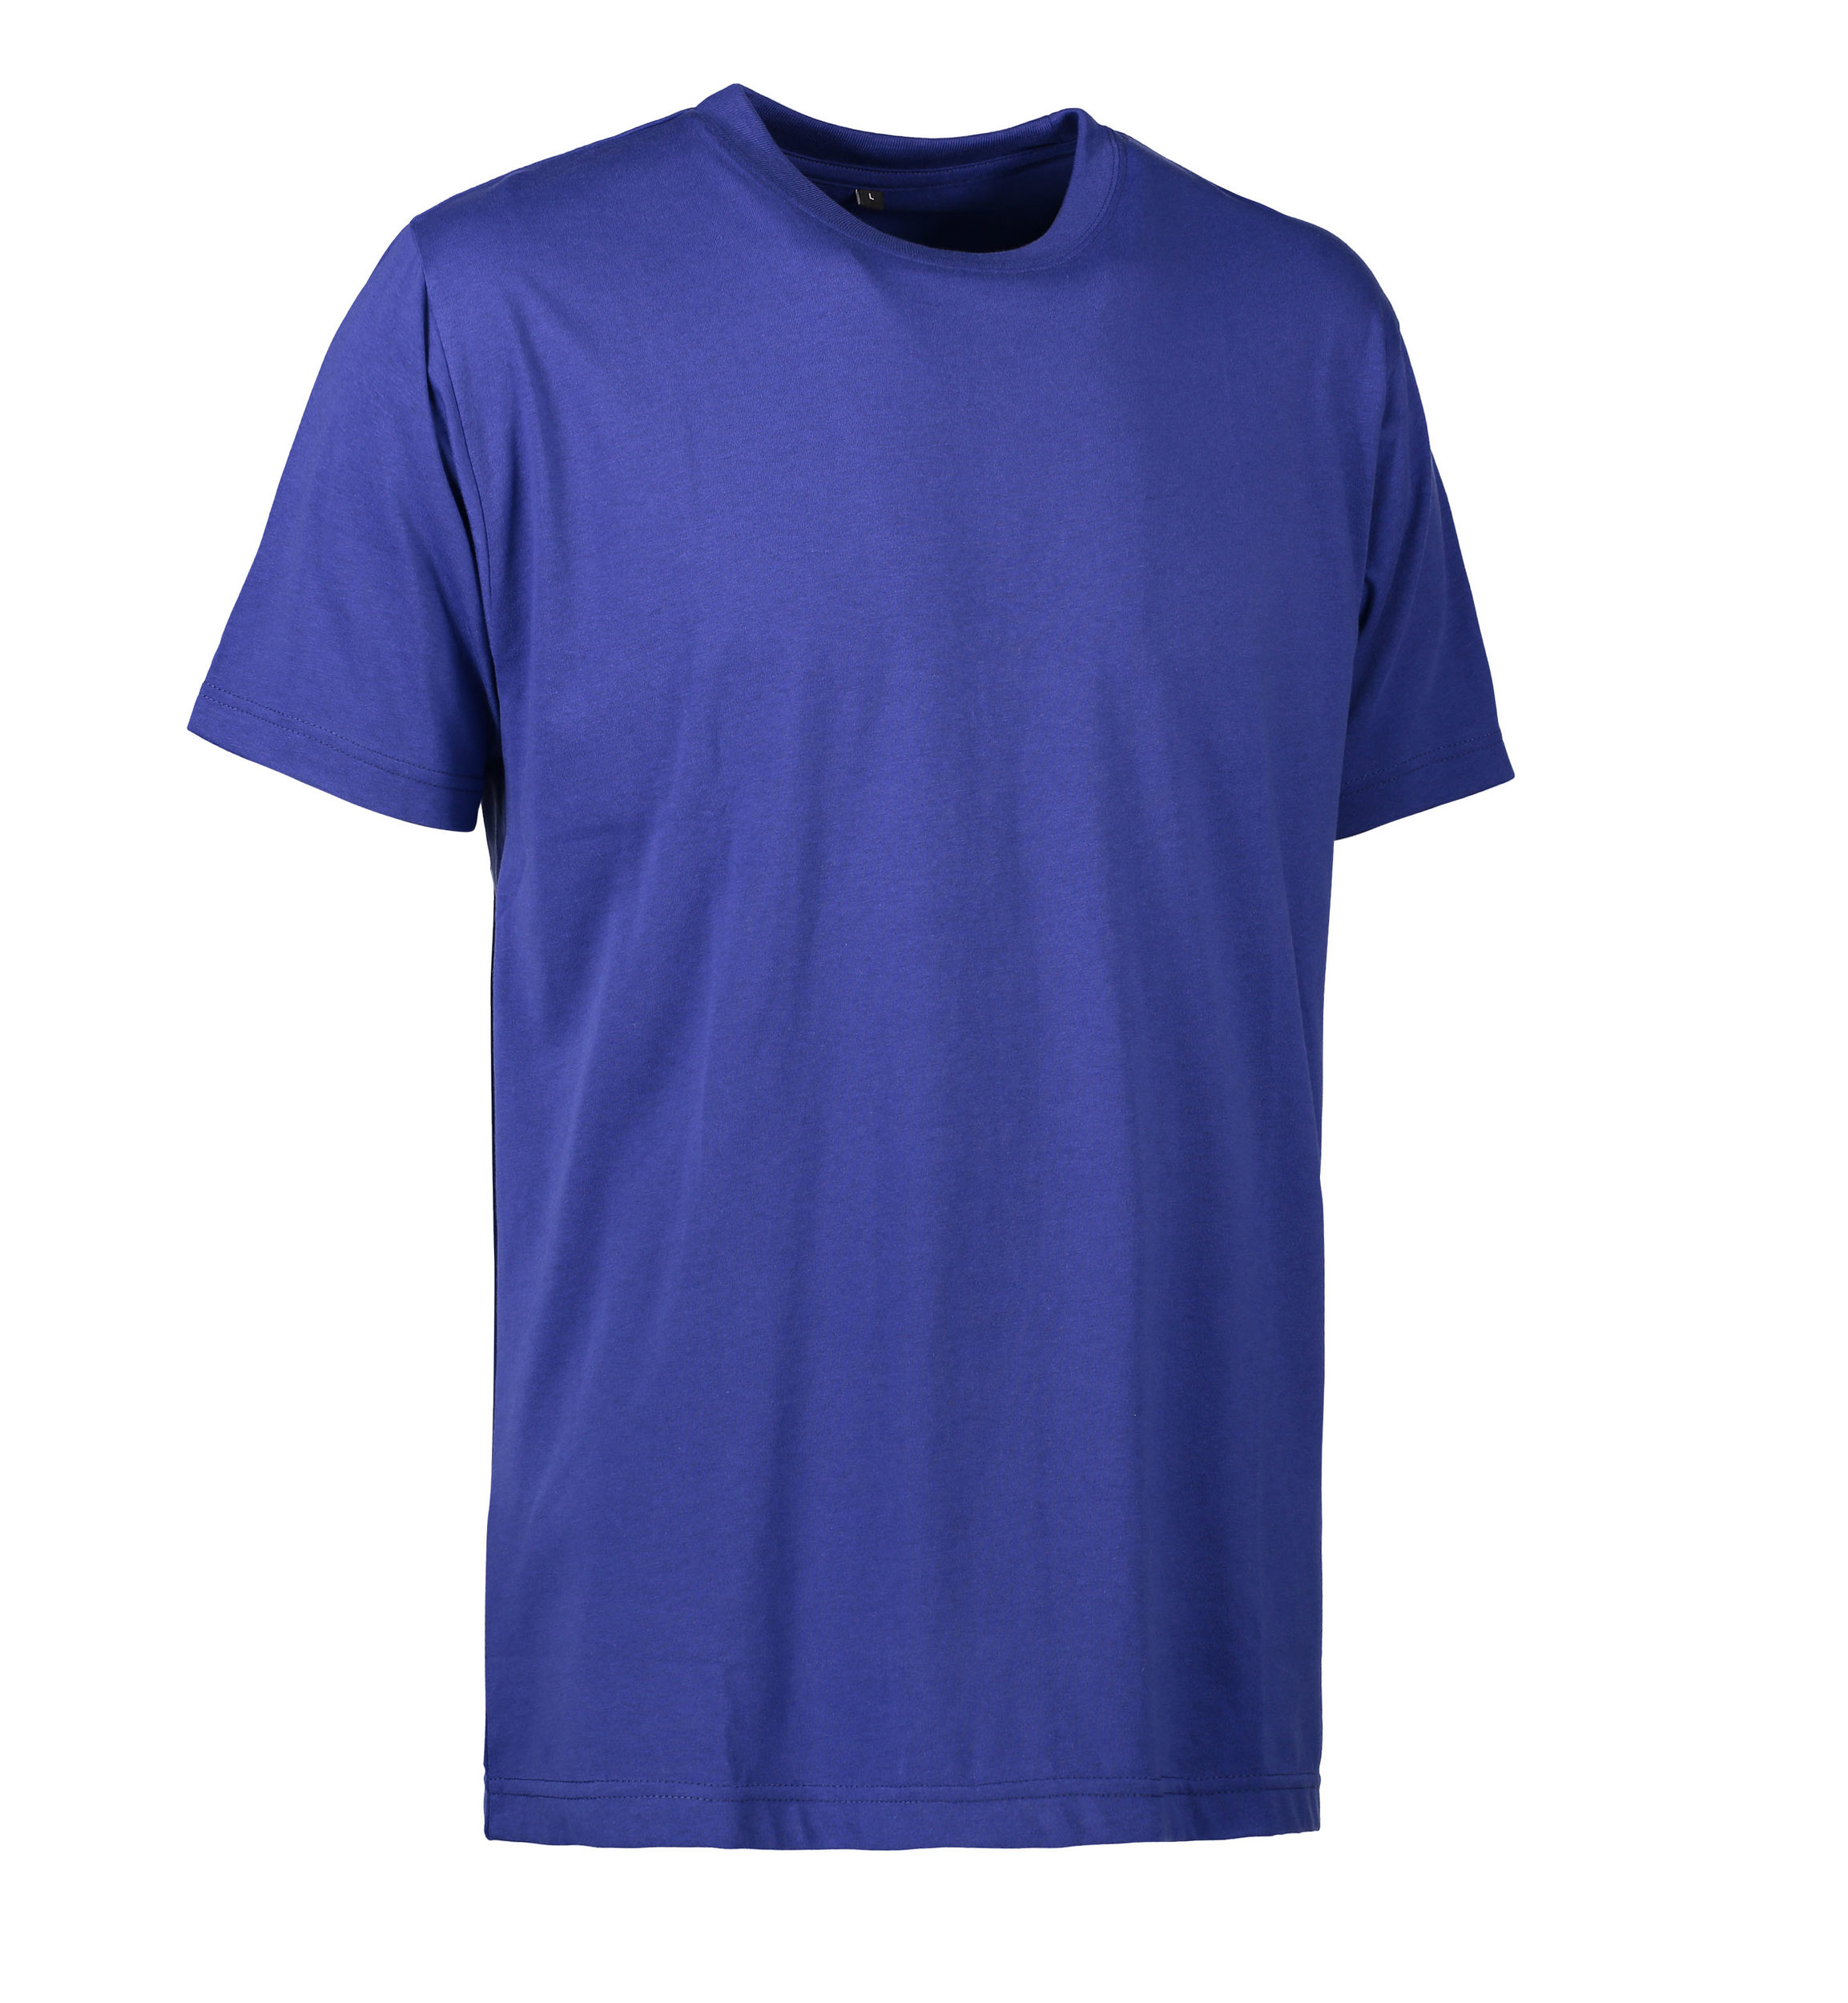 Se Slidstærk t-shirt i kongeblå til mænd - 2XL hos Sygeplejebutikken.dk